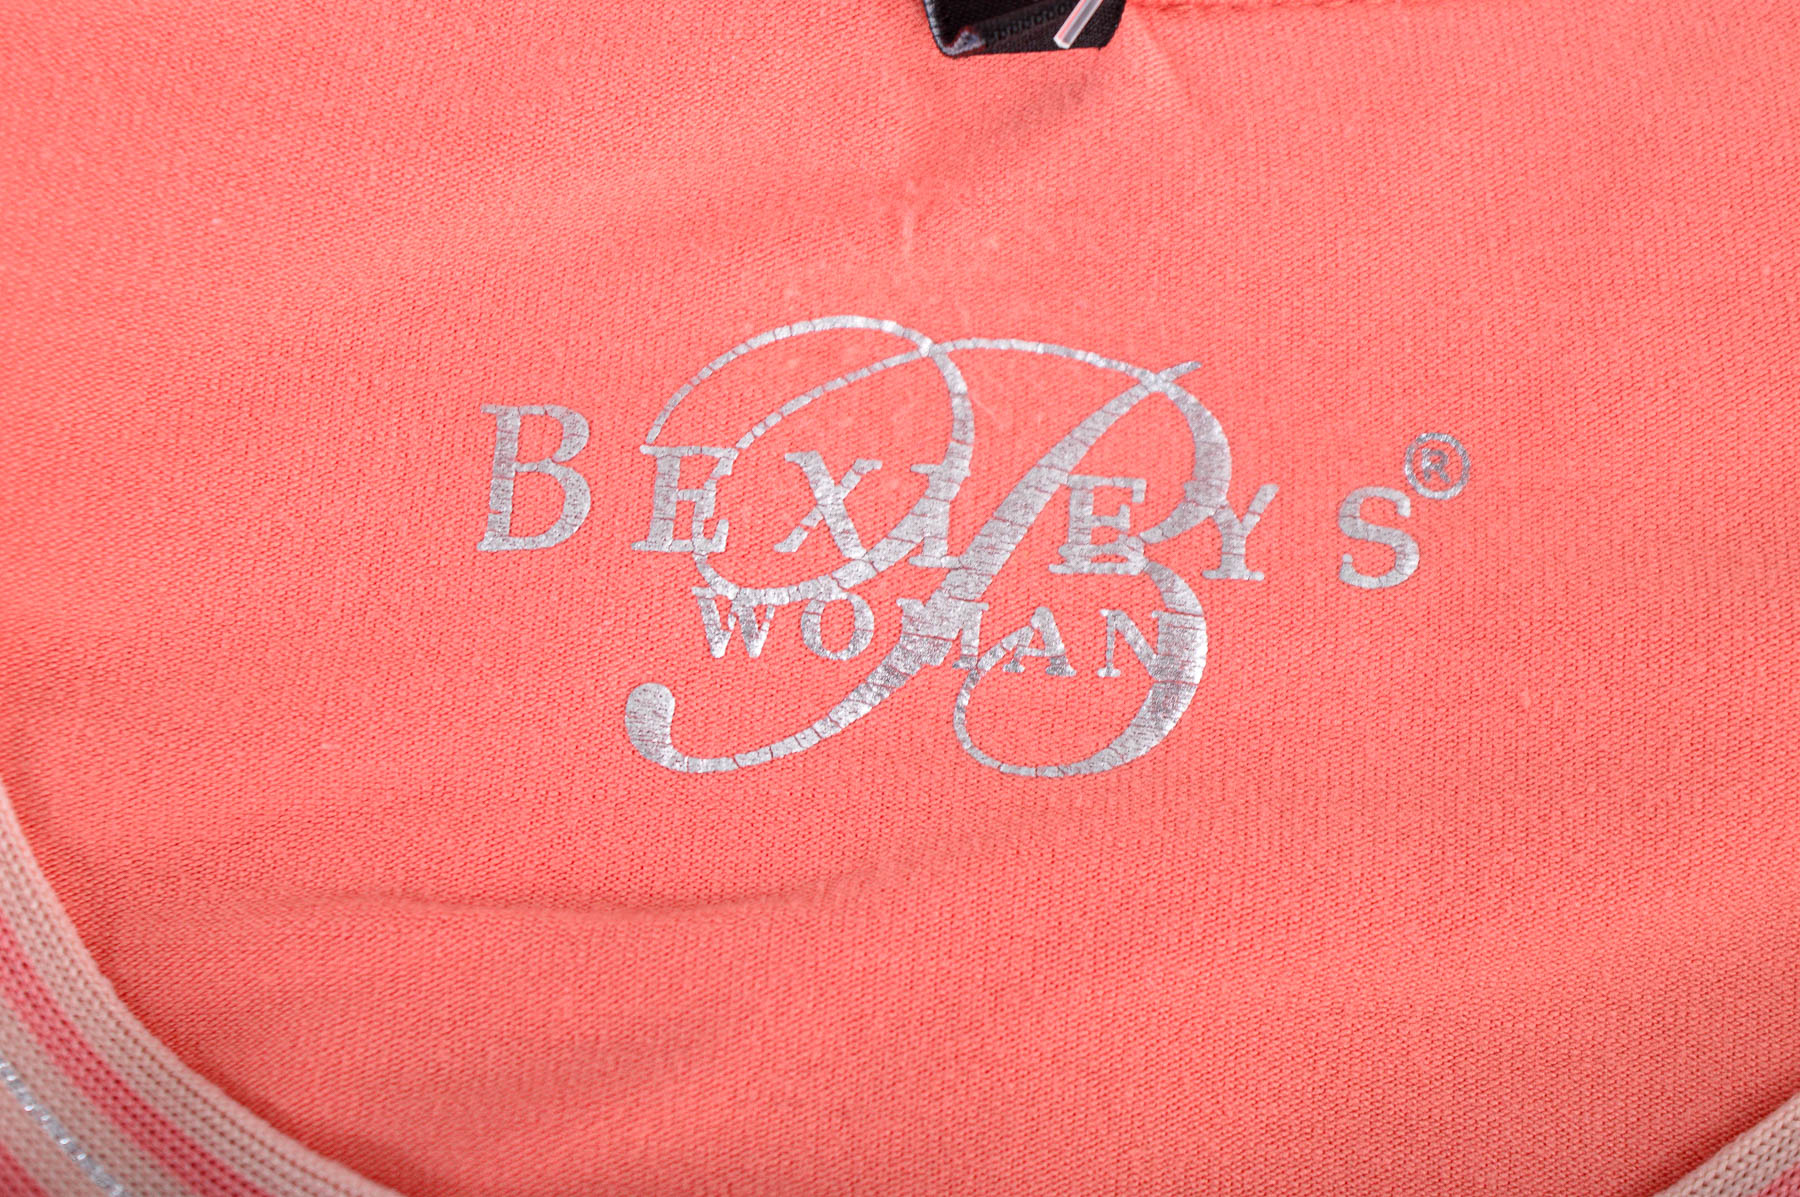 Γυναικεία μπλούζα - Bexleys - 2